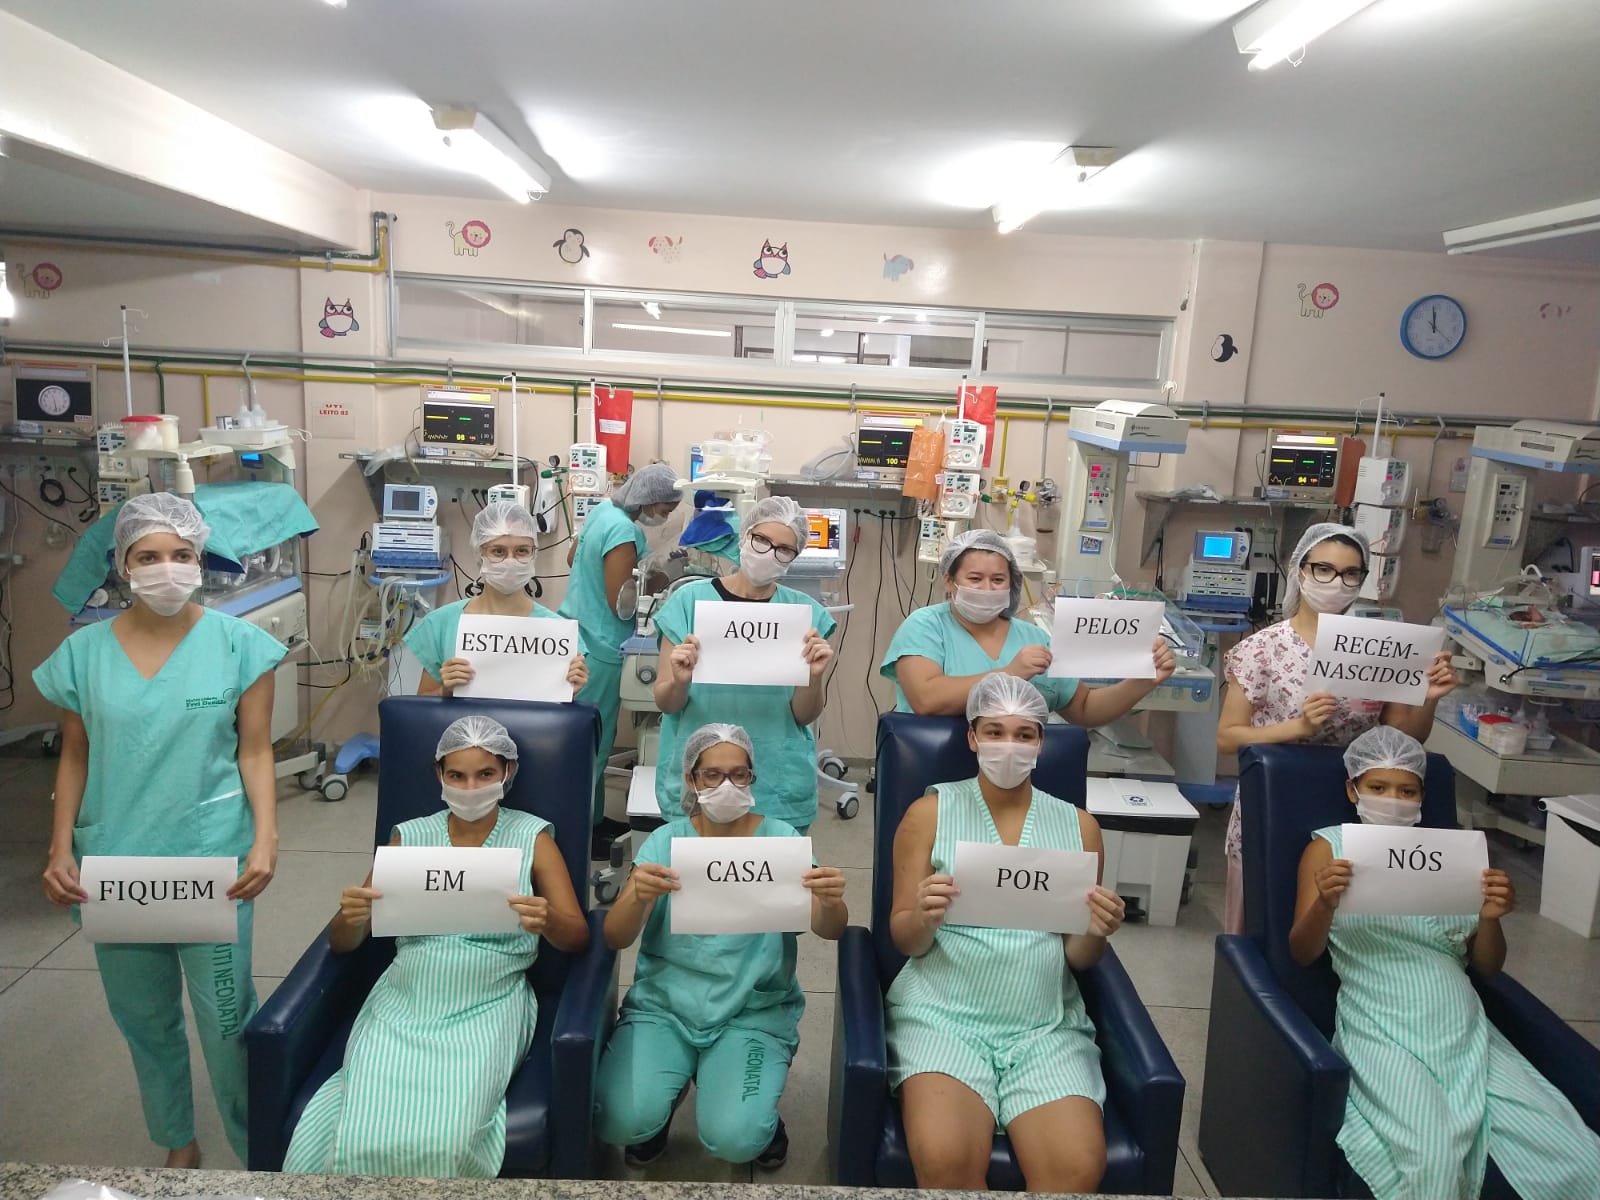 CORONAVÍRUS:  Maternidade Frei Damião lança campanha  "fiquem em casa" para proteger mães e bebês